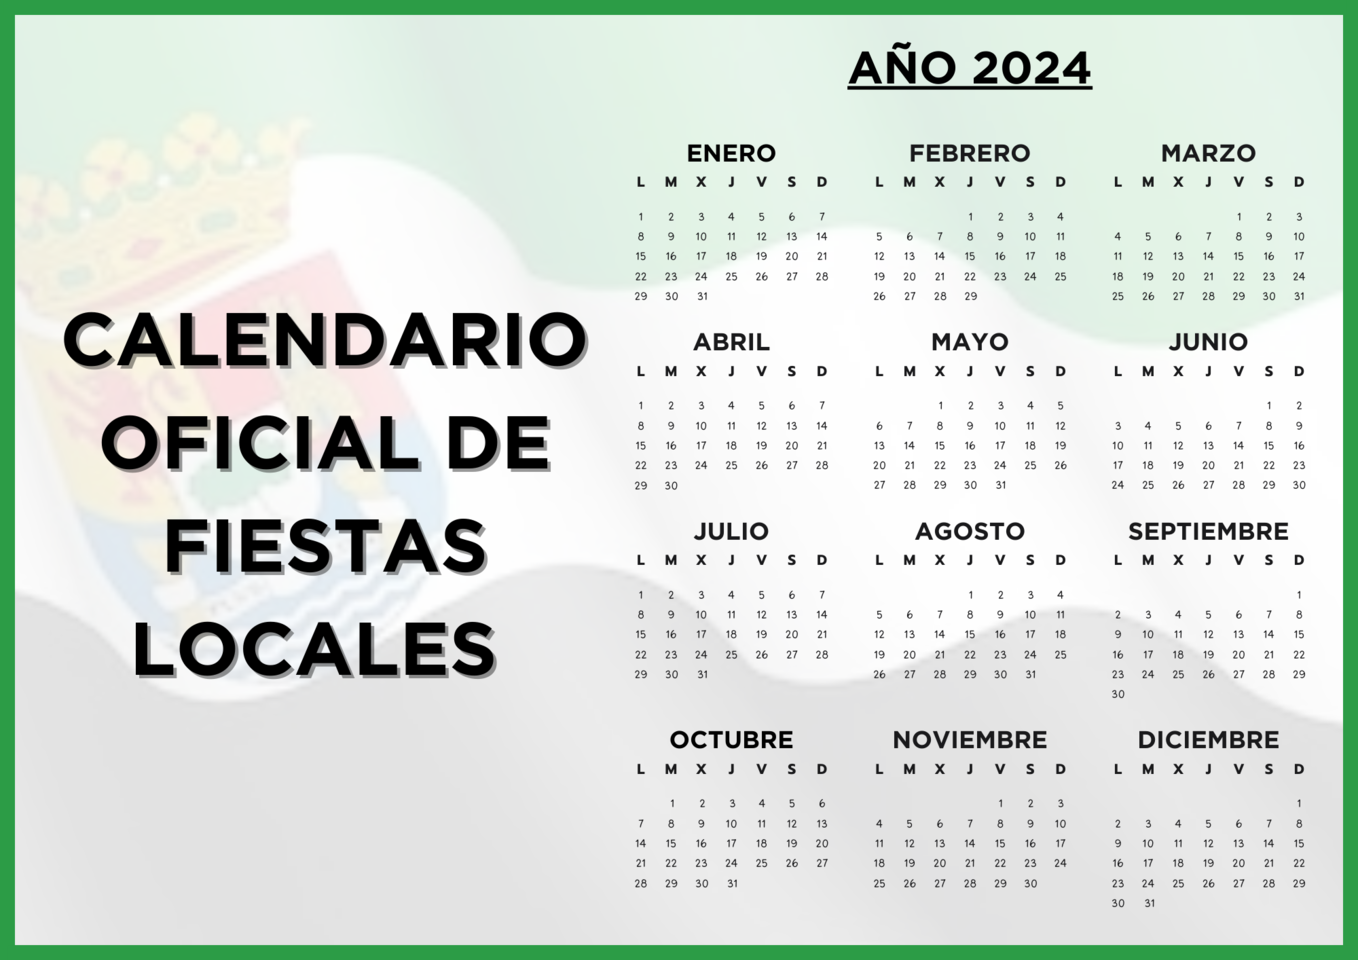 El DOE publica el calendario de los festivos locales para 2024 en